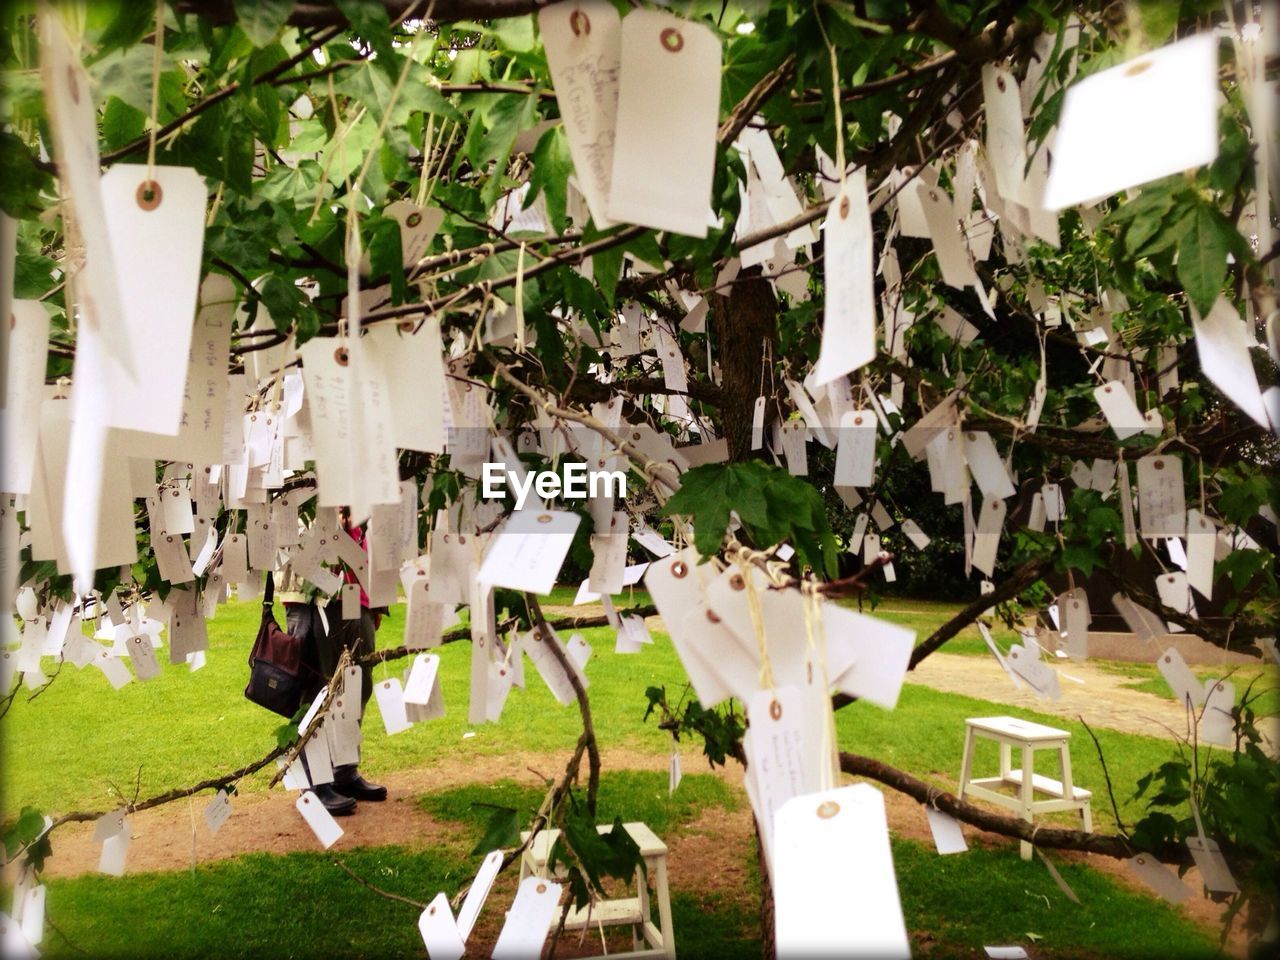 Whishing notes hanging on tree